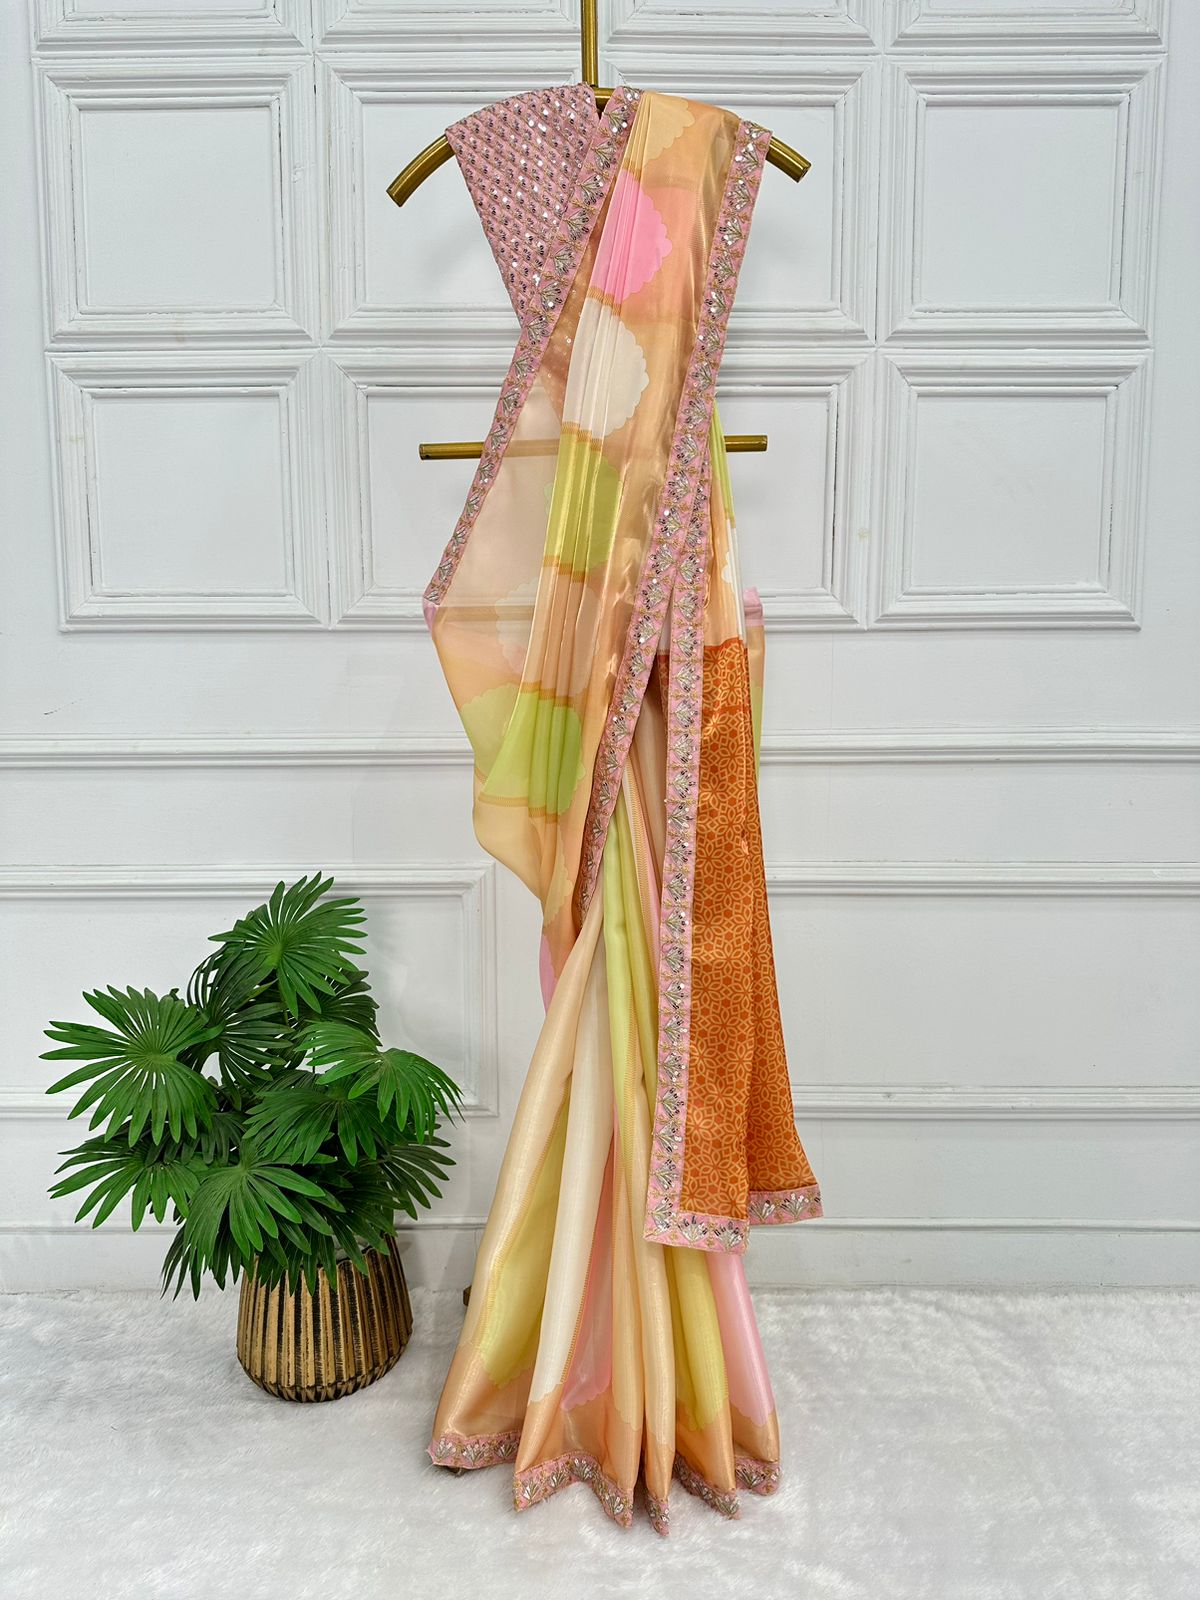 Bollywood Kiara Advani Wear Multi Color Saree